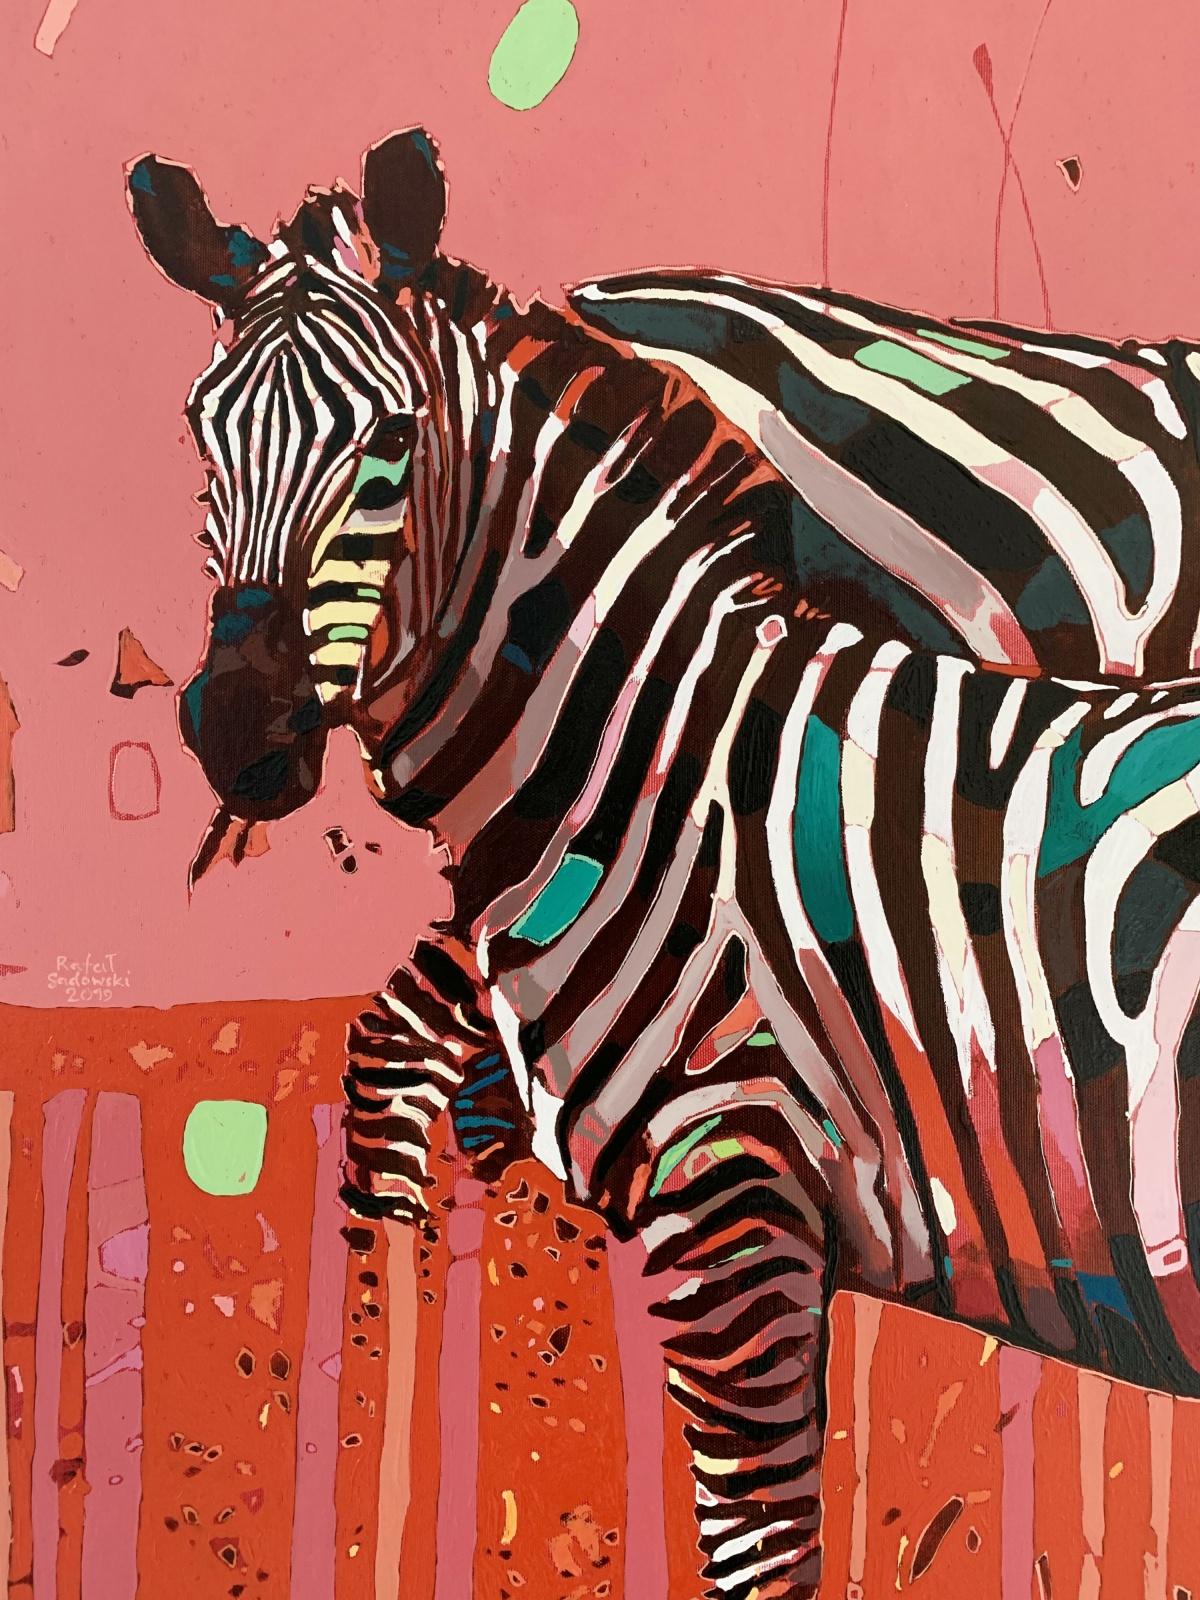 Zebra 07 ( Animal) - XXI Century, Contemporary Figurative Oil Painting, Animals - Brown Figurative Painting by Rafał Gadowski